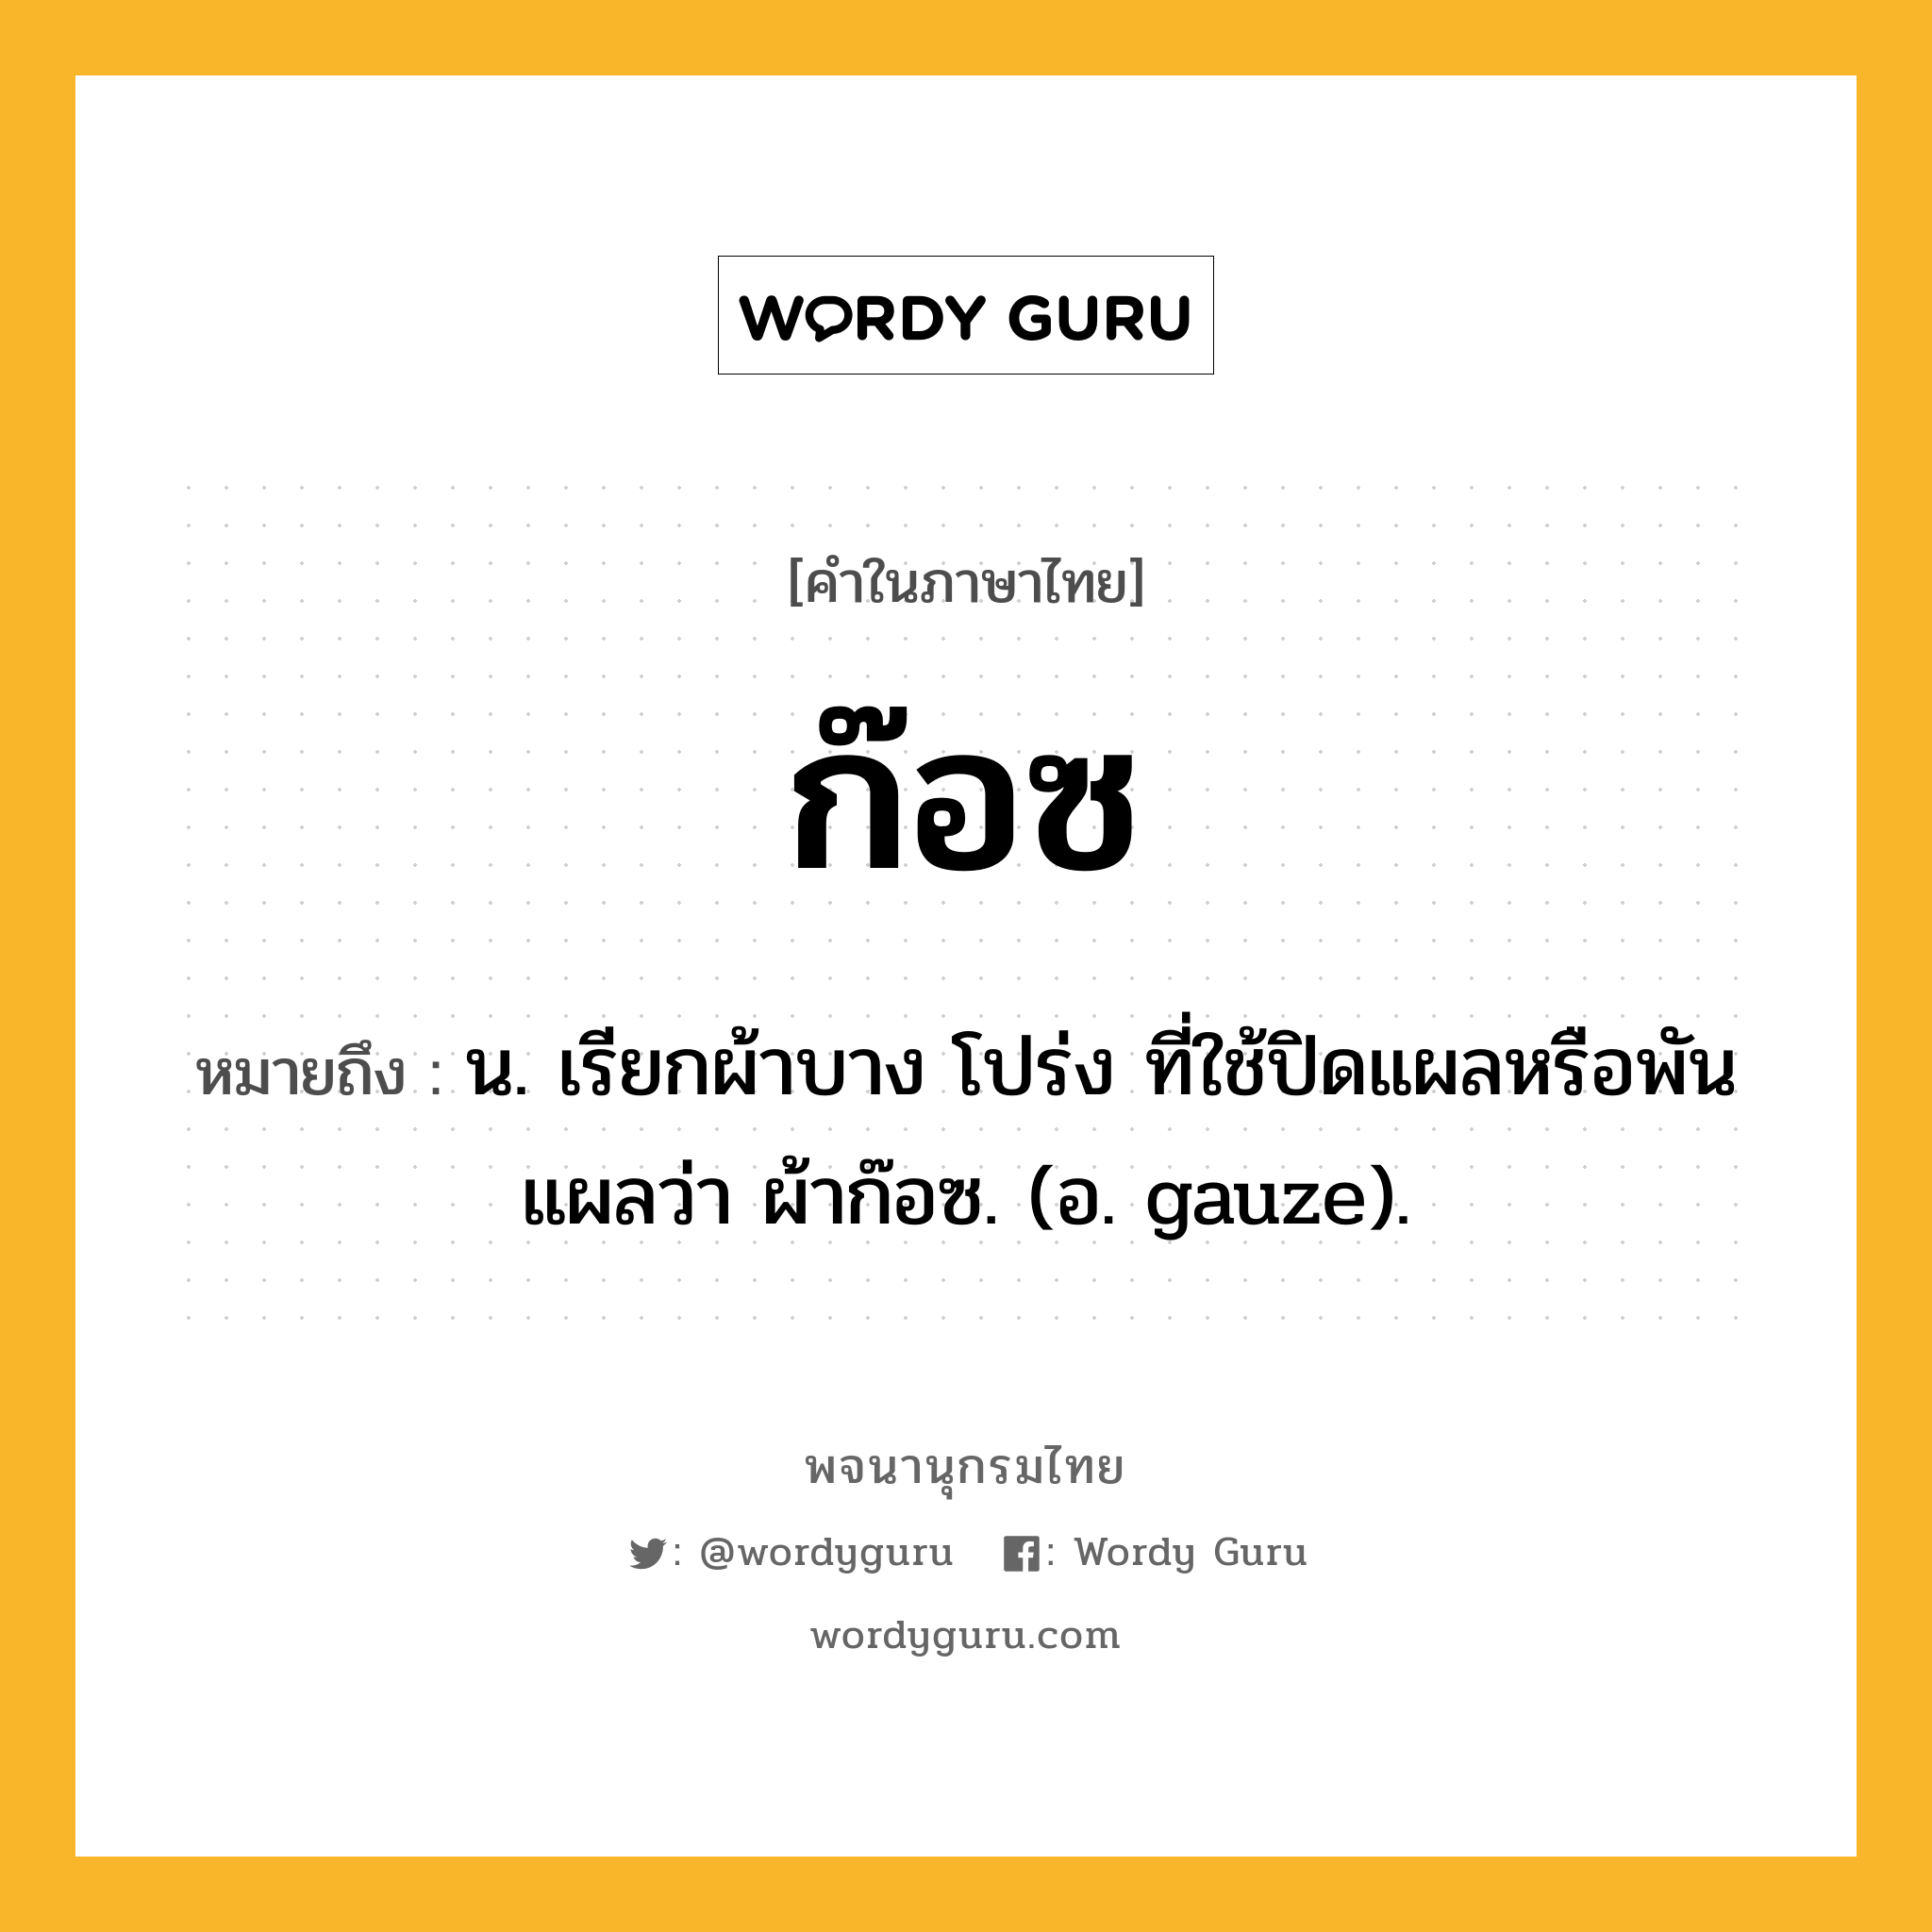 ก๊อซ ความหมาย หมายถึงอะไร?, คำในภาษาไทย ก๊อซ หมายถึง น. เรียกผ้าบาง โปร่ง ที่ใช้ปิดแผลหรือพันแผลว่า ผ้าก๊อซ. (อ. gauze).